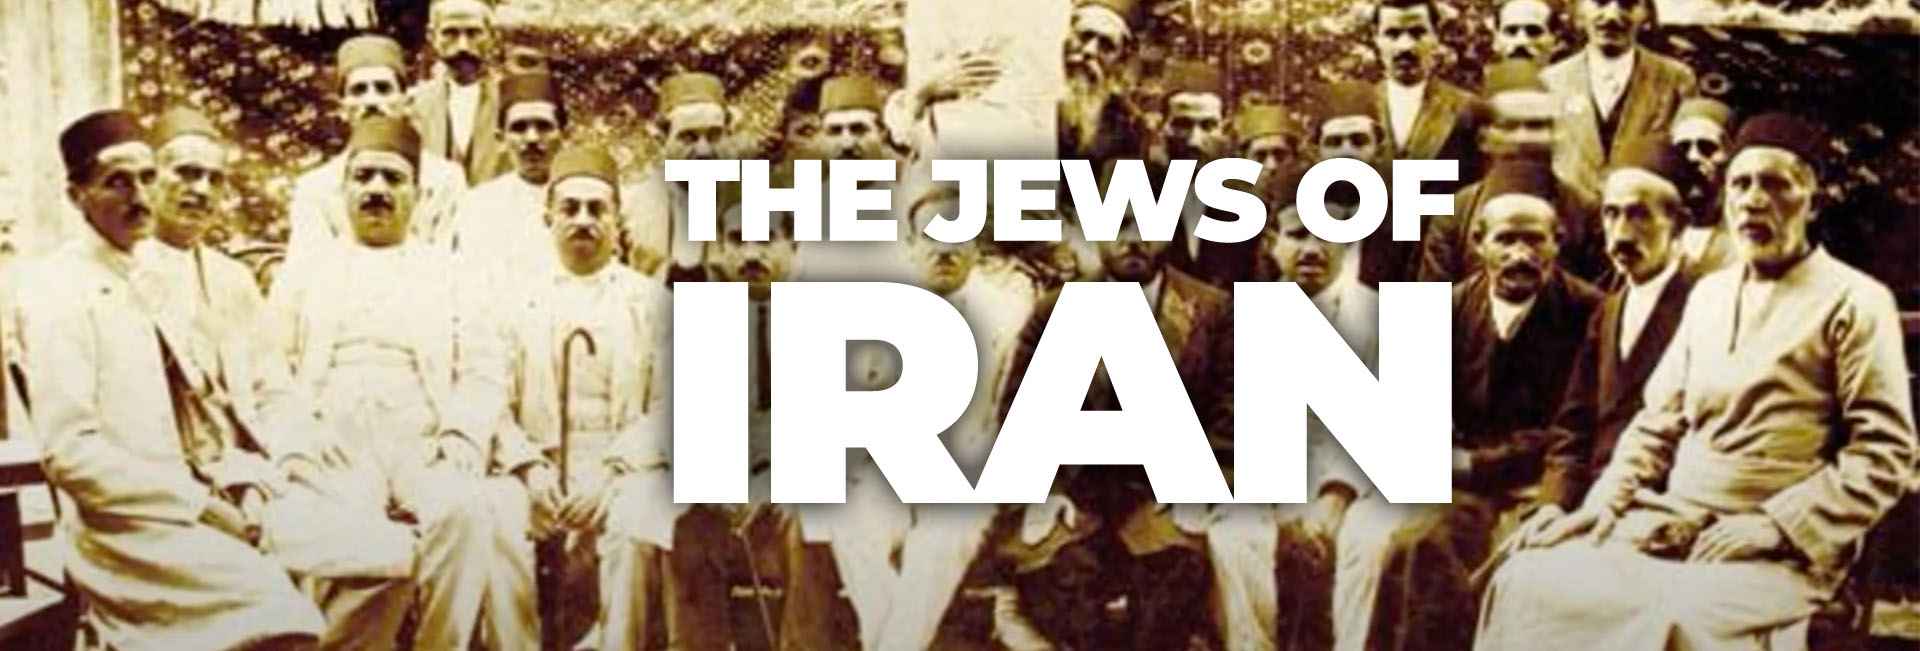 The Jews of Iran